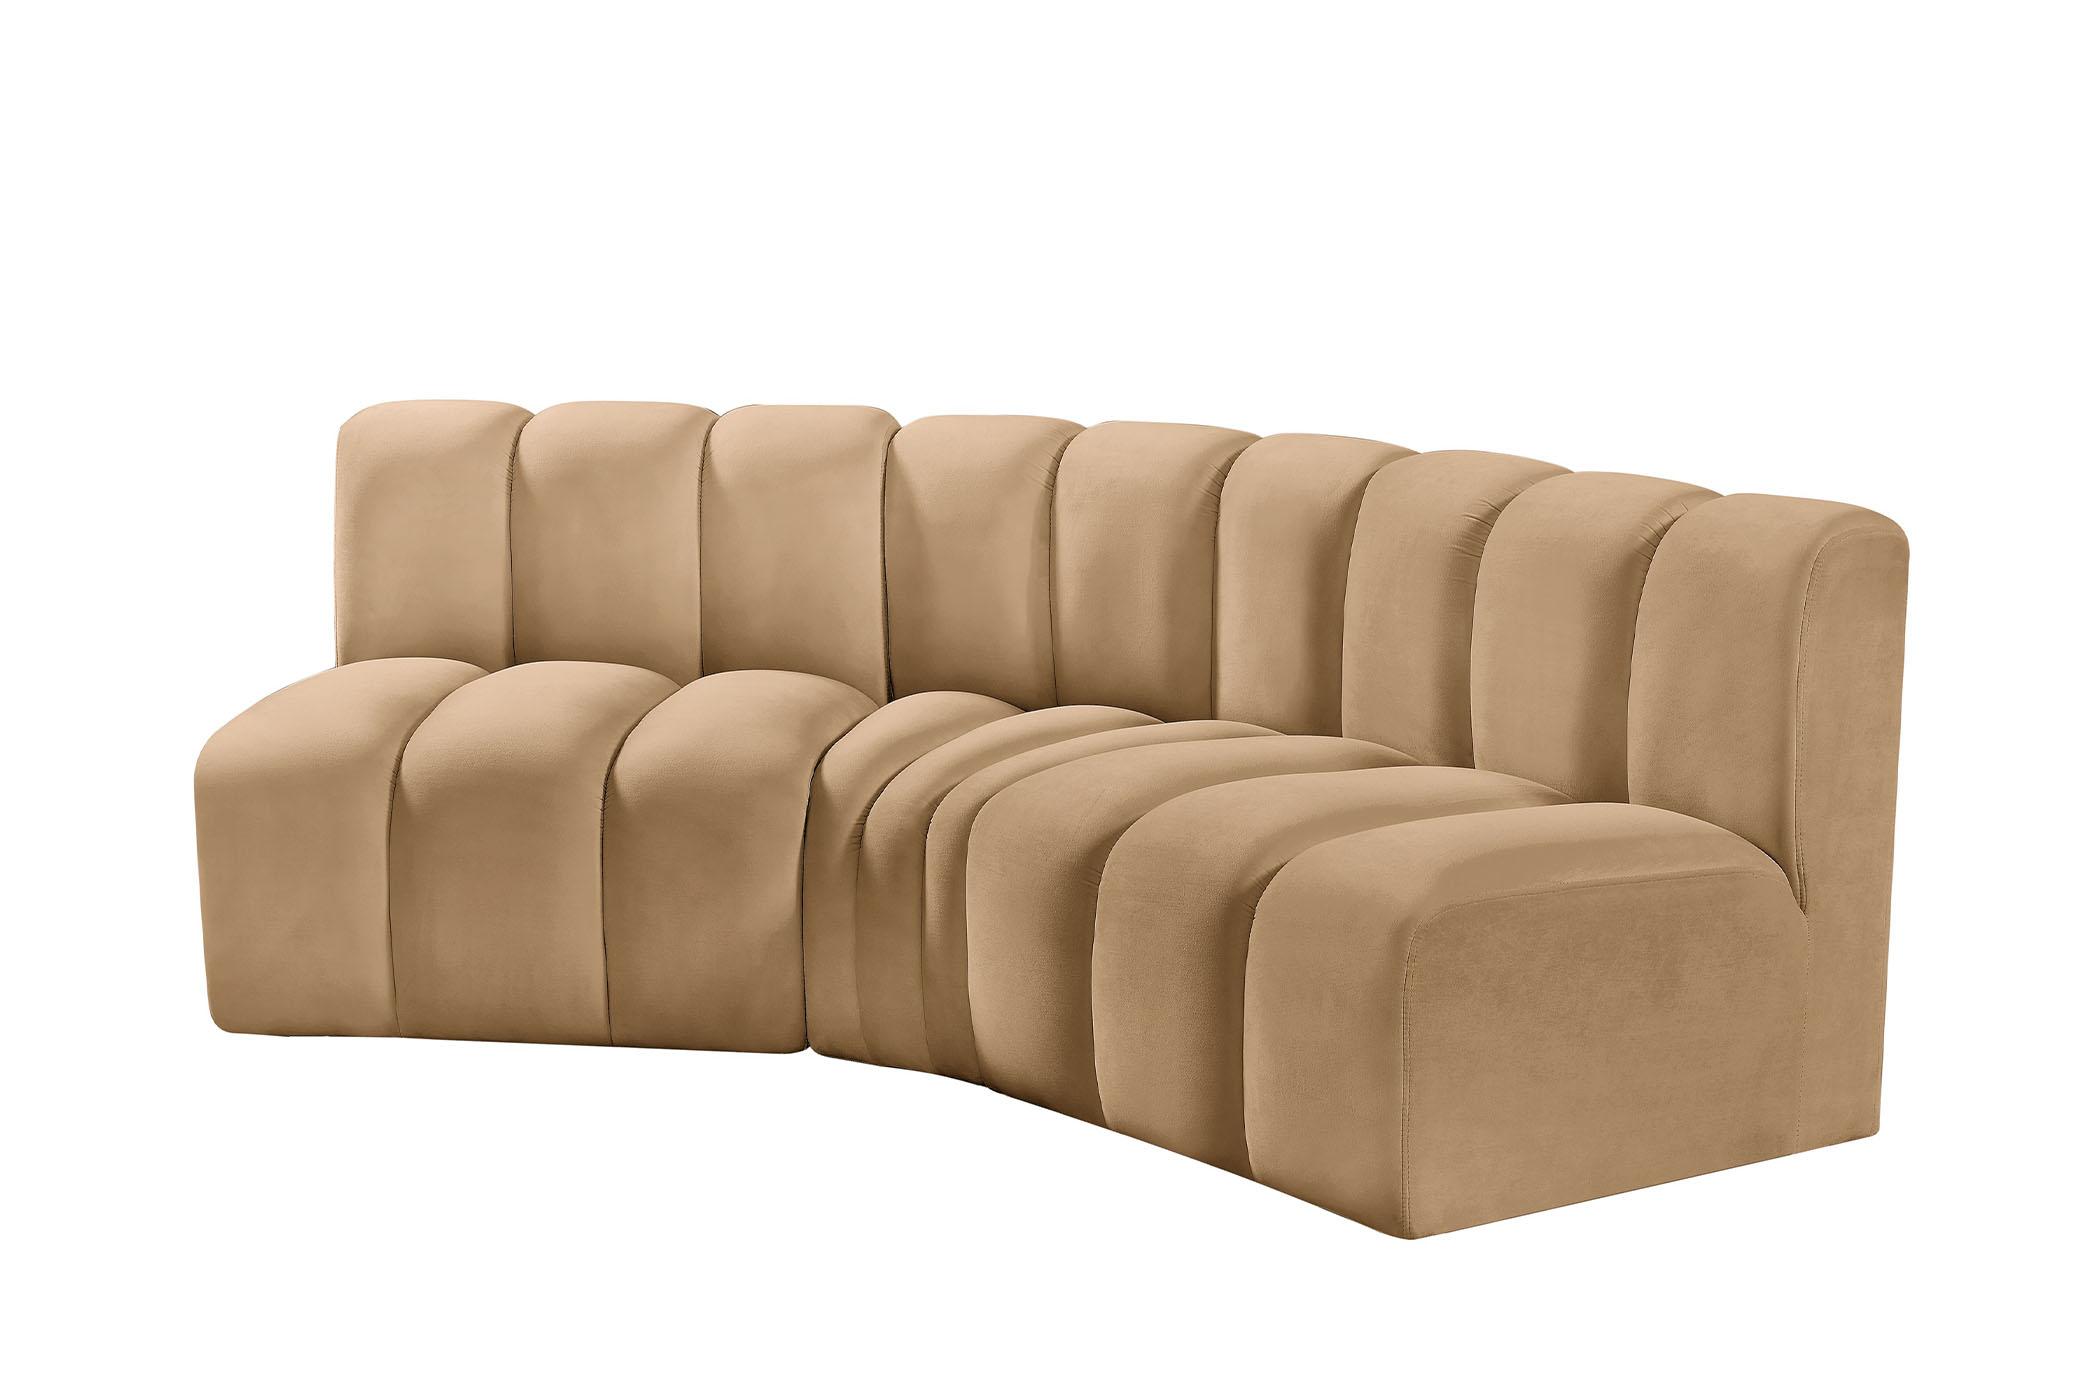 

    
103Camel-S3B Meridian Furniture Modular Sectional Sofa
